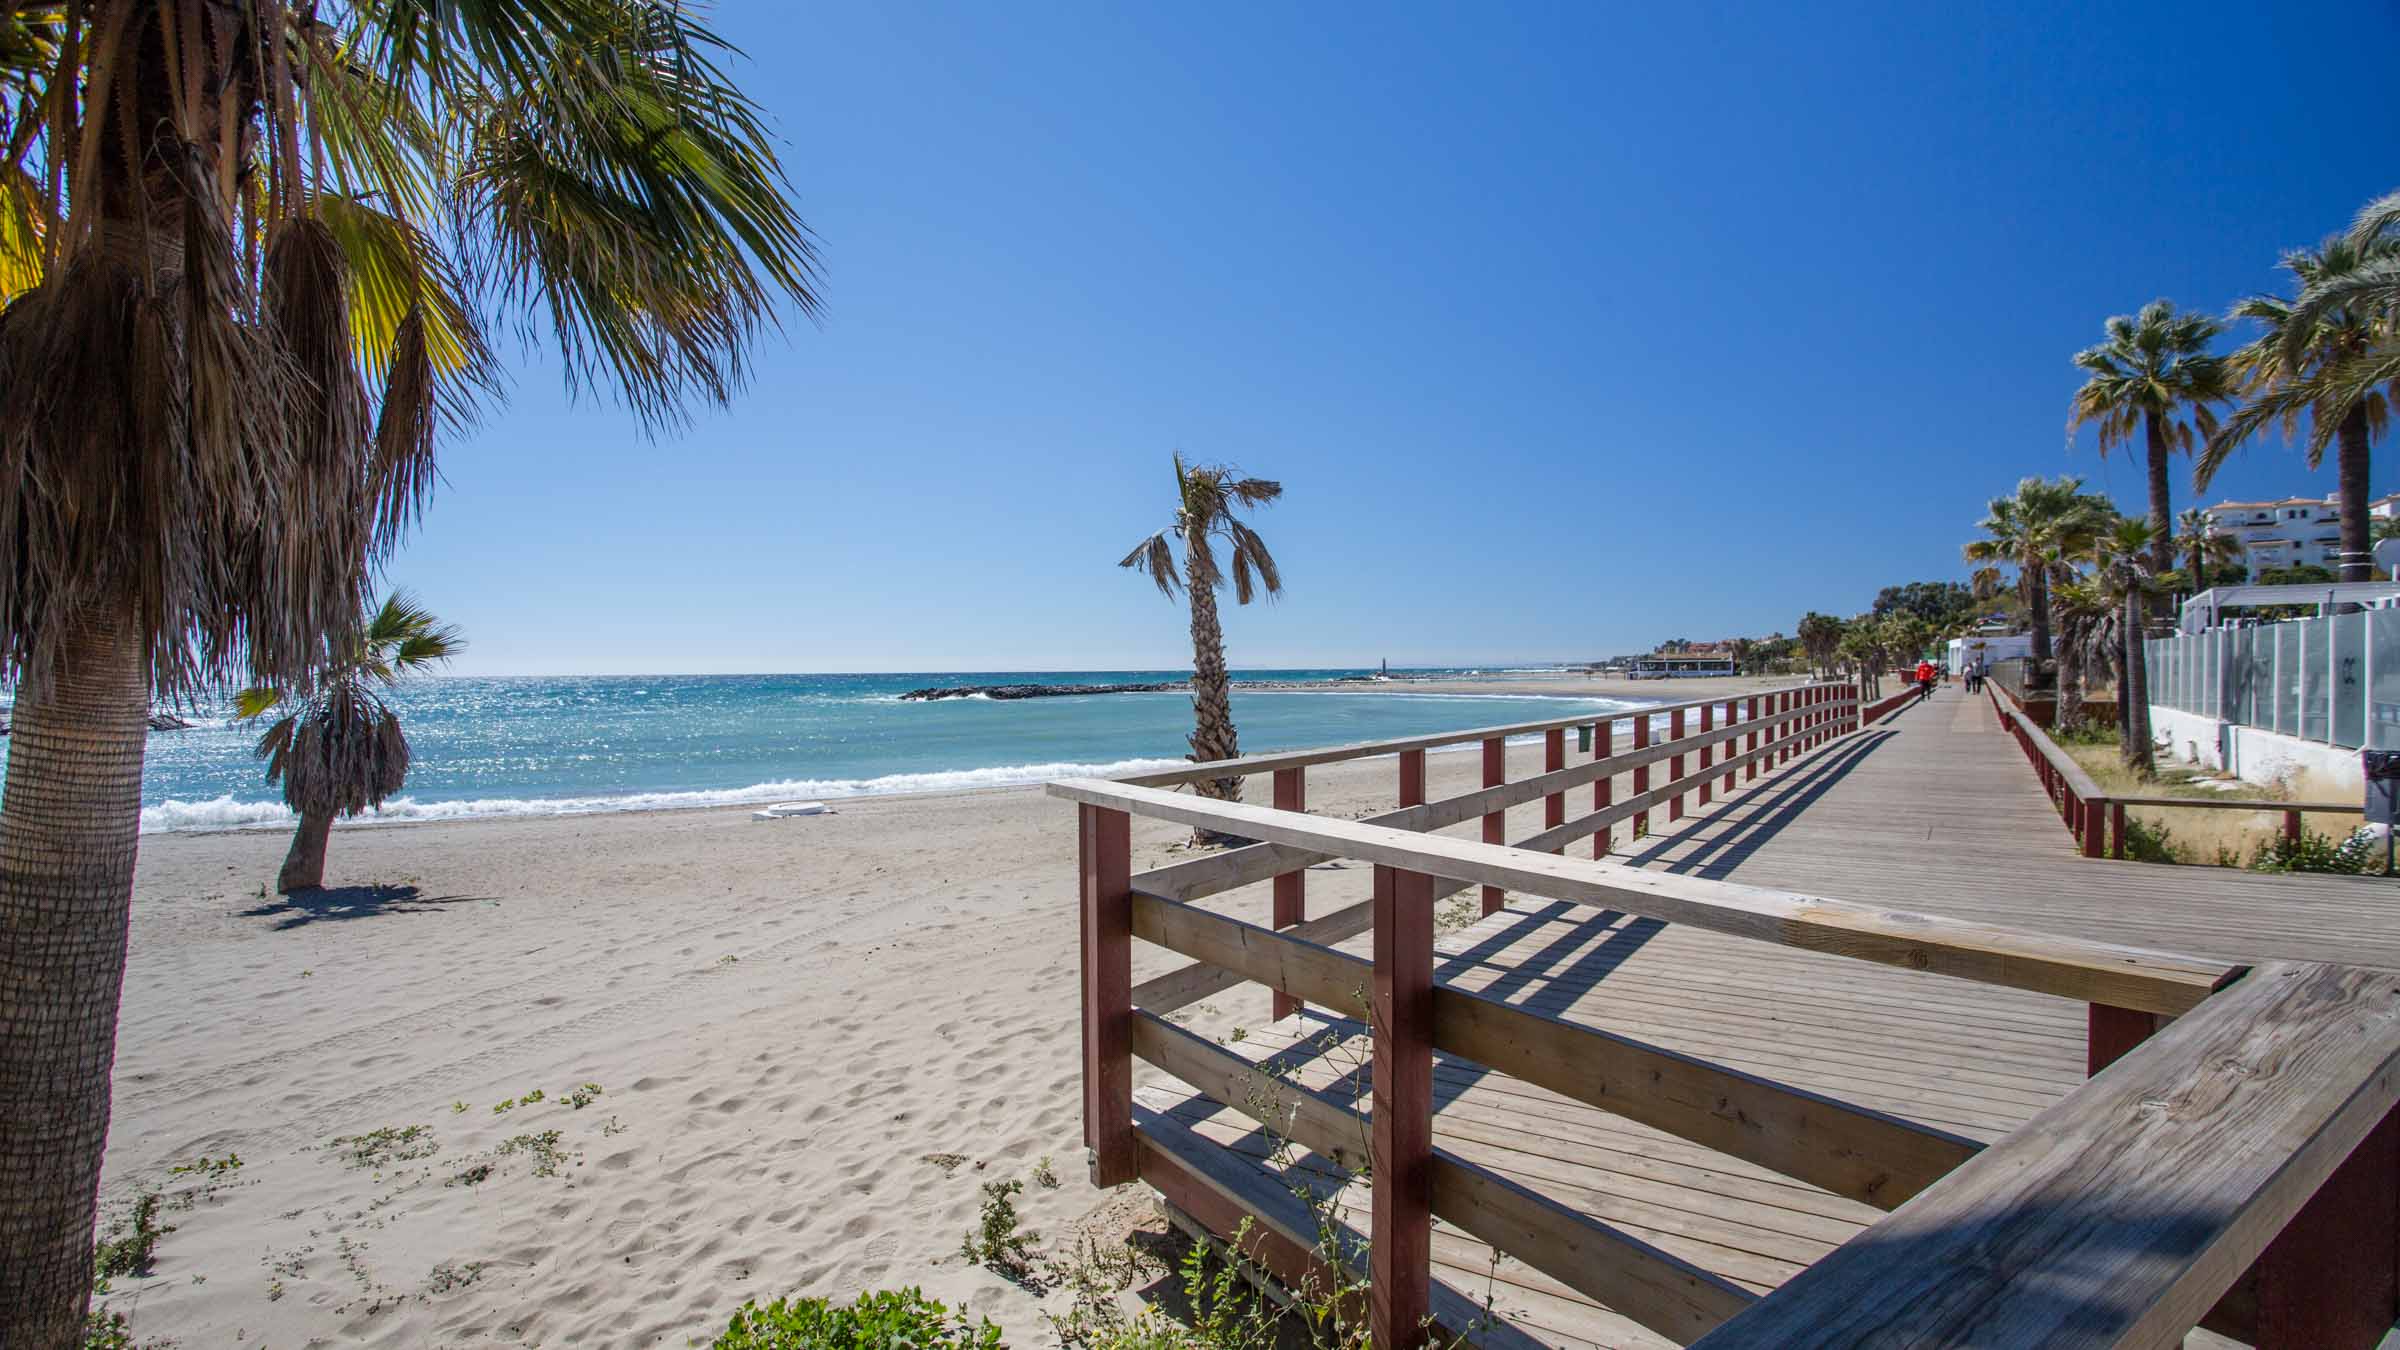 Strand von Puerto Banus mit Palmen und Promenade